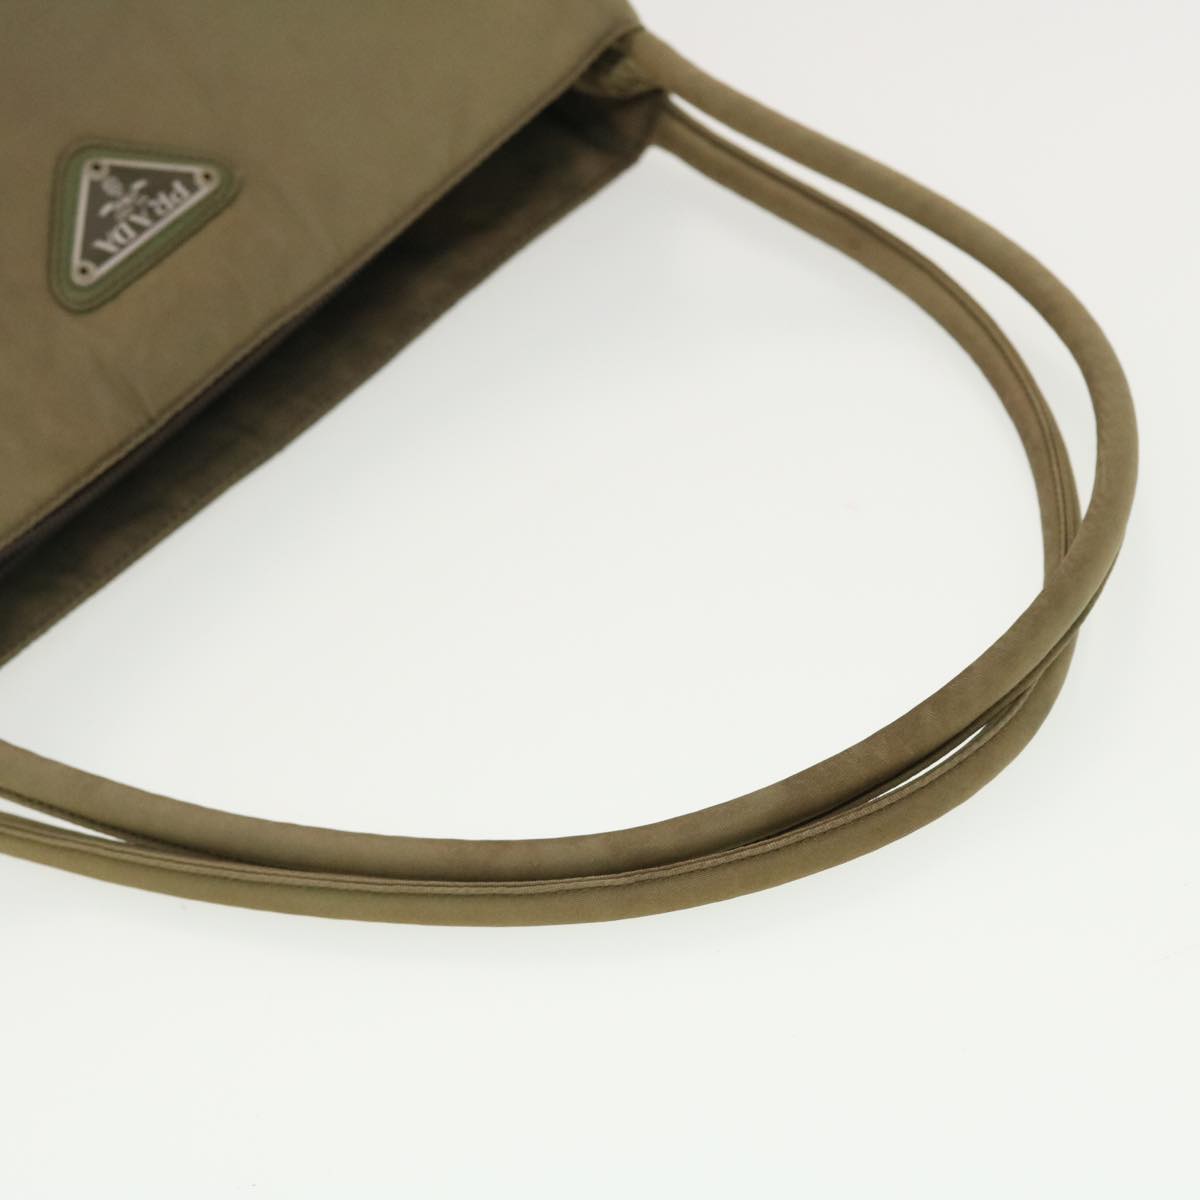 PRADA Hand Bag Nylon Khaki Auth 40088